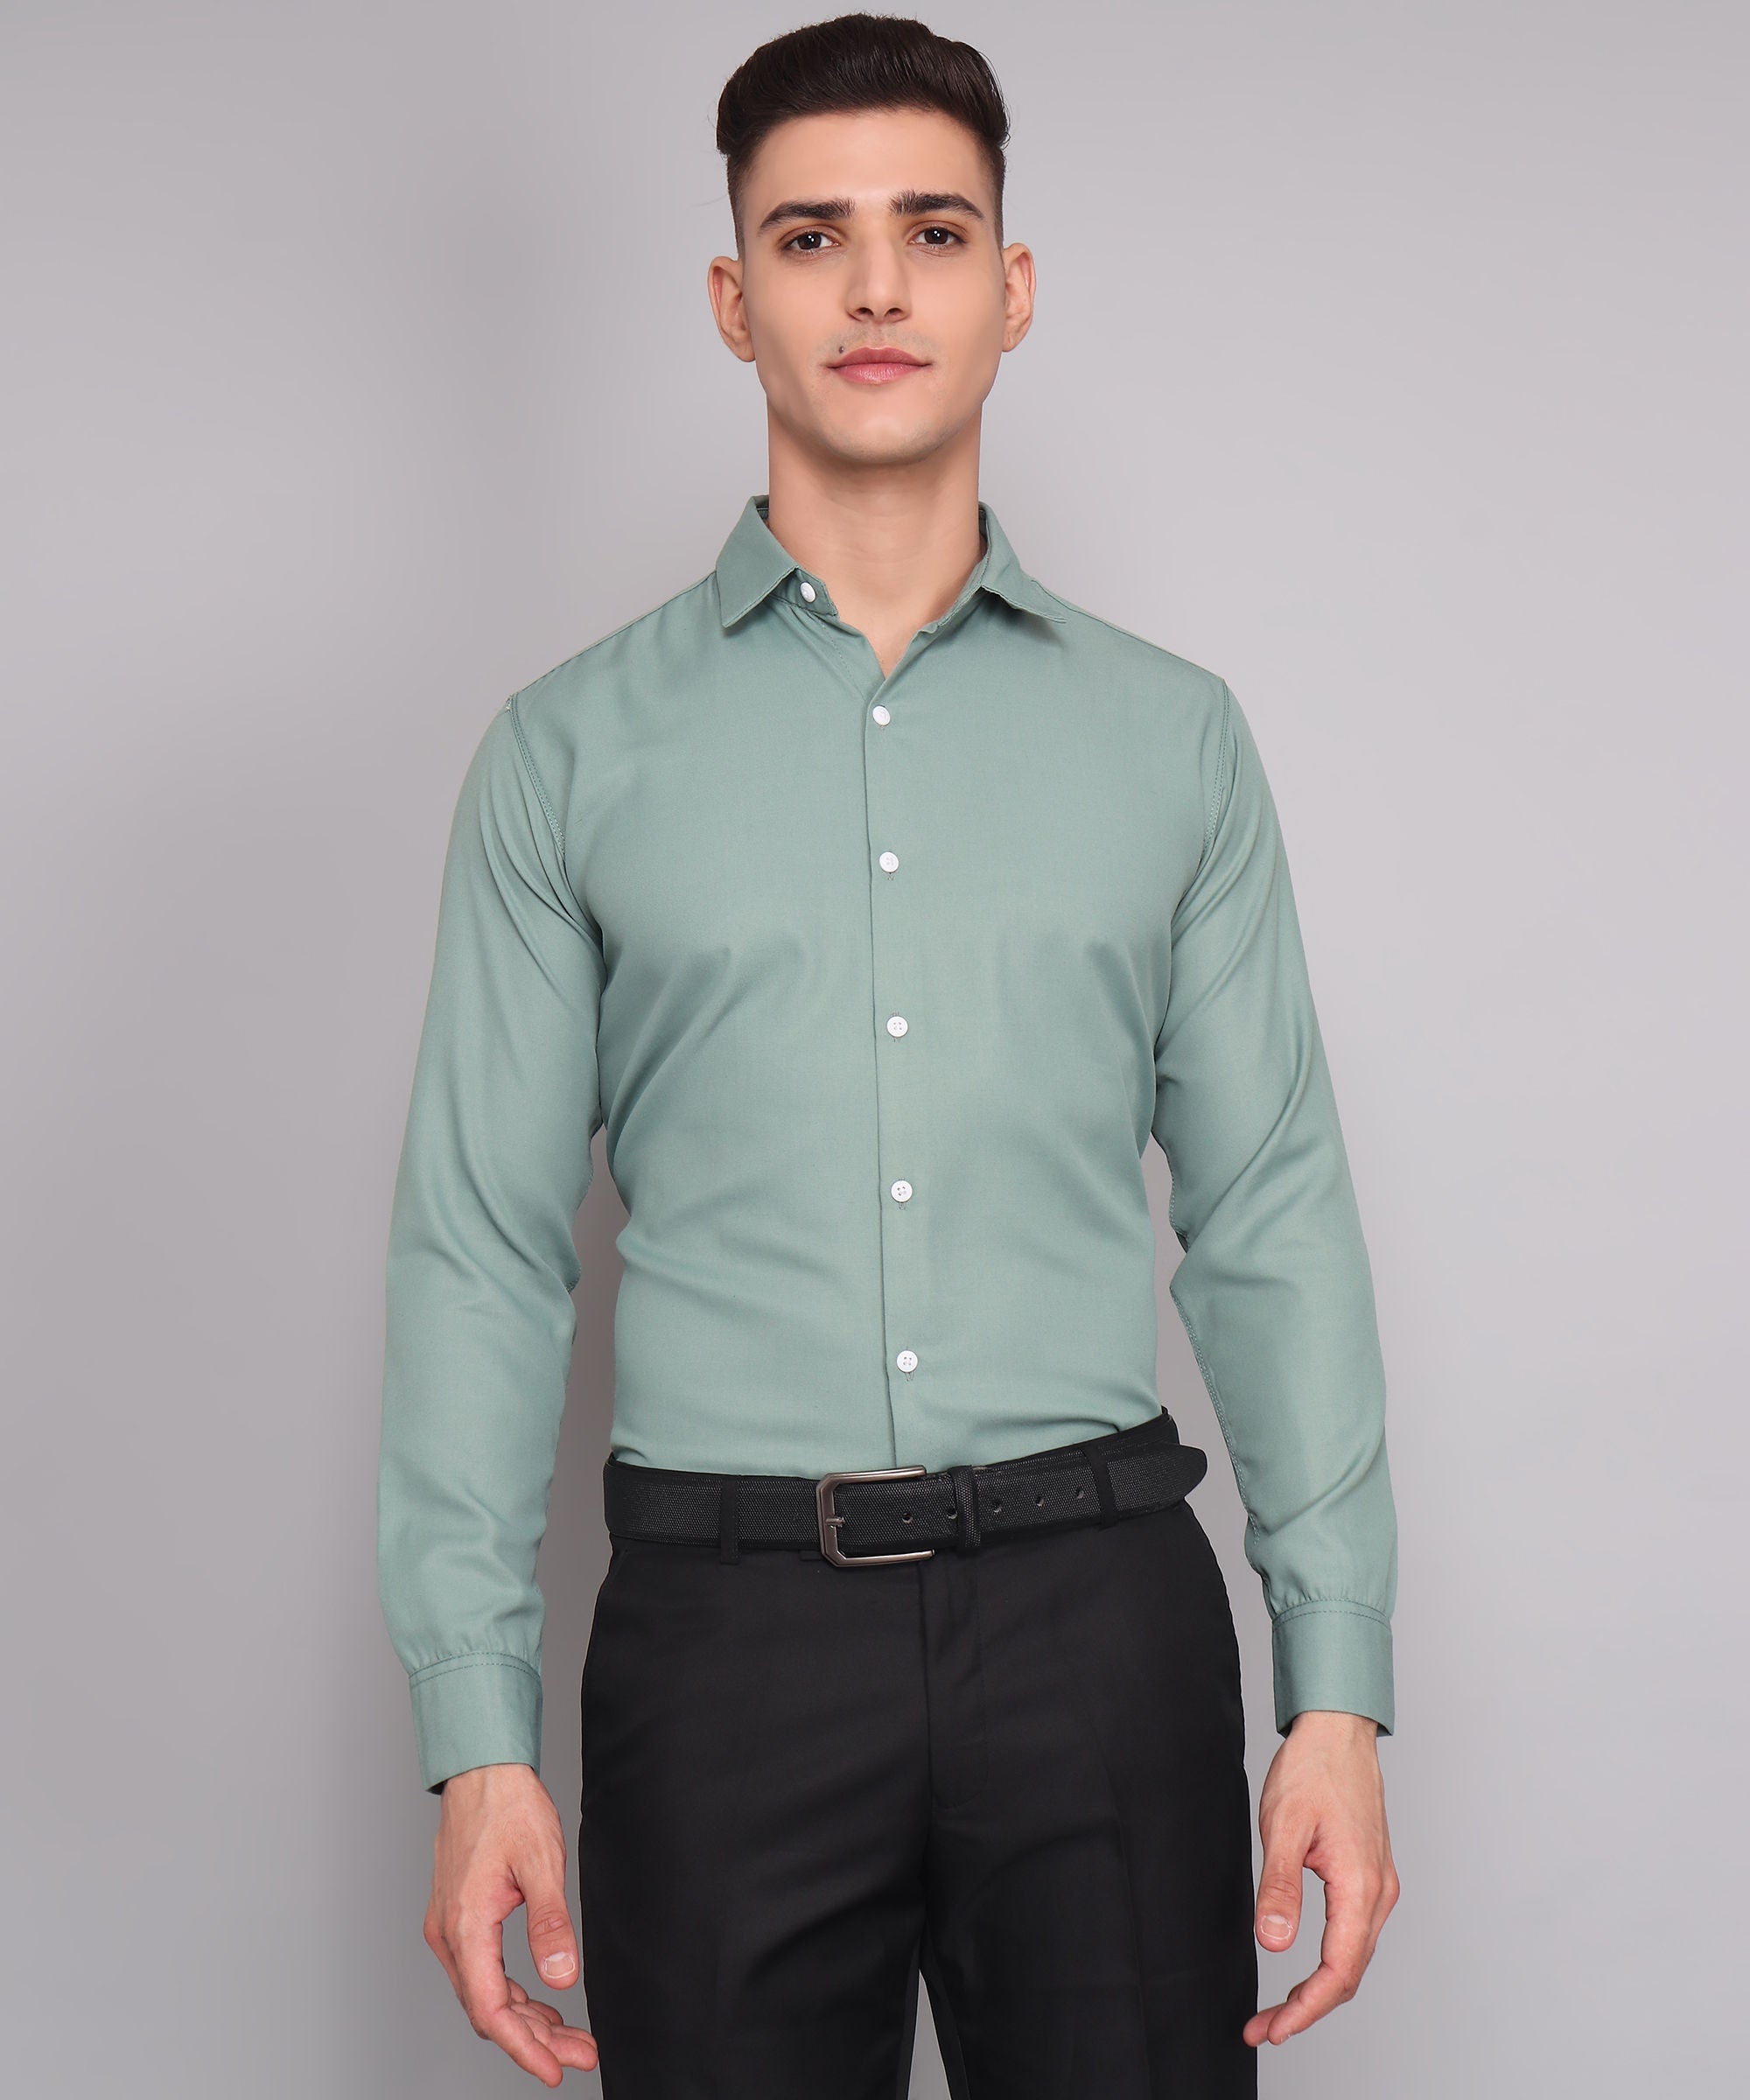 Exclusive TryBuy Premium Ocean Green Dress Shirt for Men